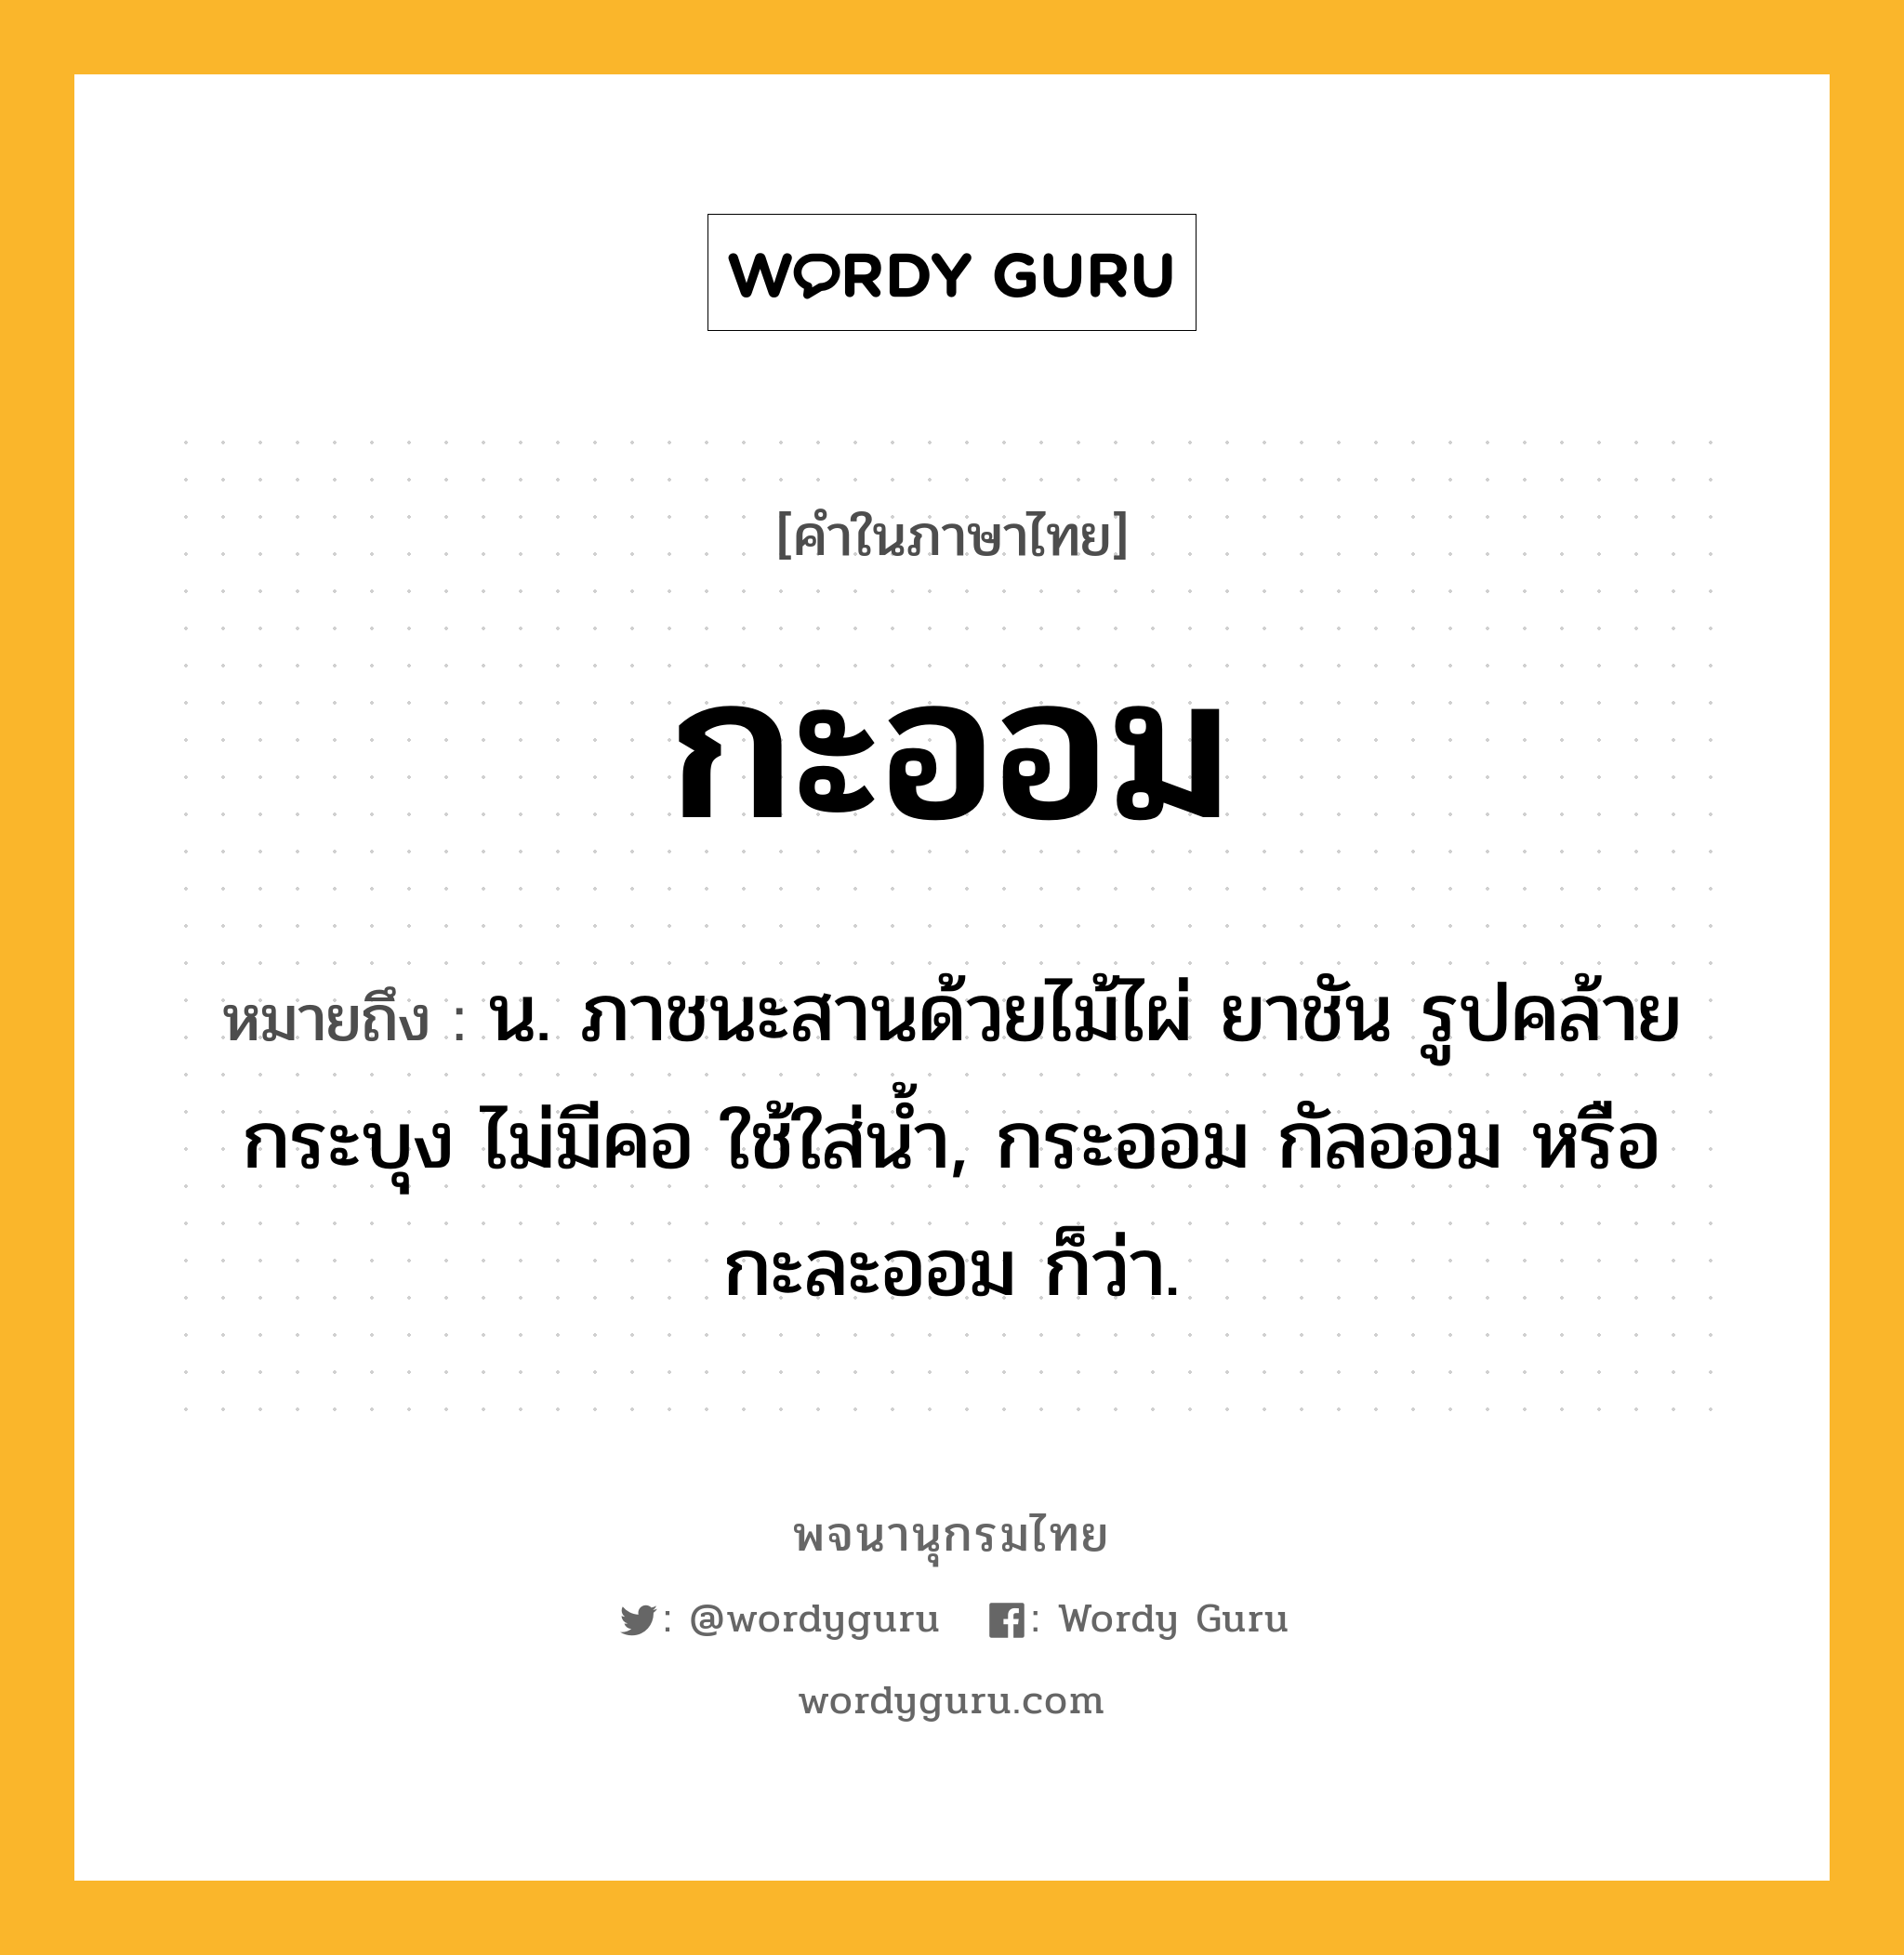 กะออม หมายถึงอะไร?, คำในภาษาไทย กะออม หมายถึง น. ภาชนะสานด้วยไม้ไผ่ ยาชัน รูปคล้ายกระบุง ไม่มีคอ ใช้ใส่น้ำ, กระออม กัลออม หรือ กะละออม ก็ว่า.